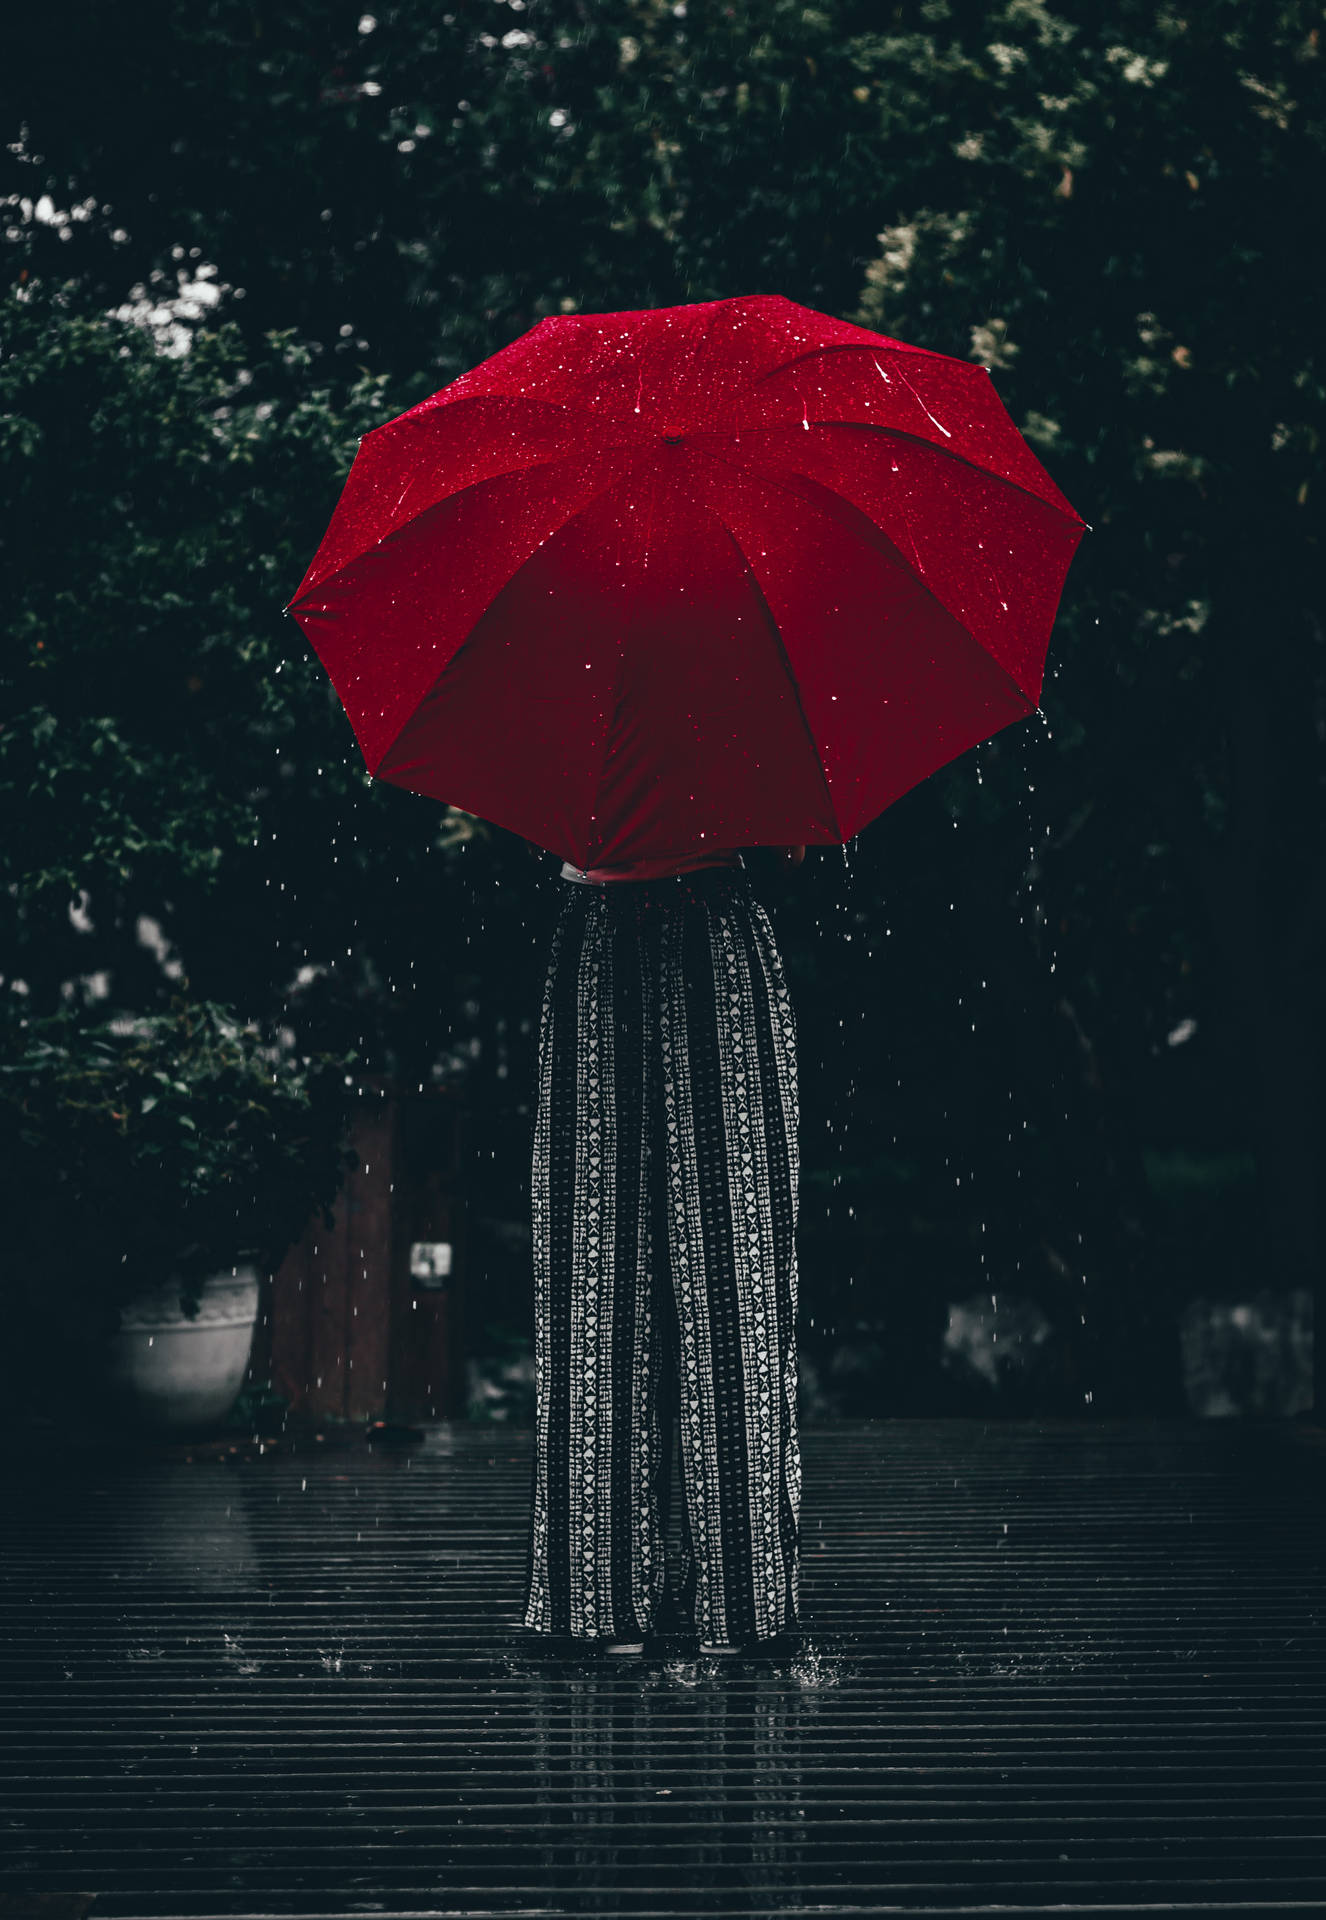 Rain Nature Red Umbrella Background